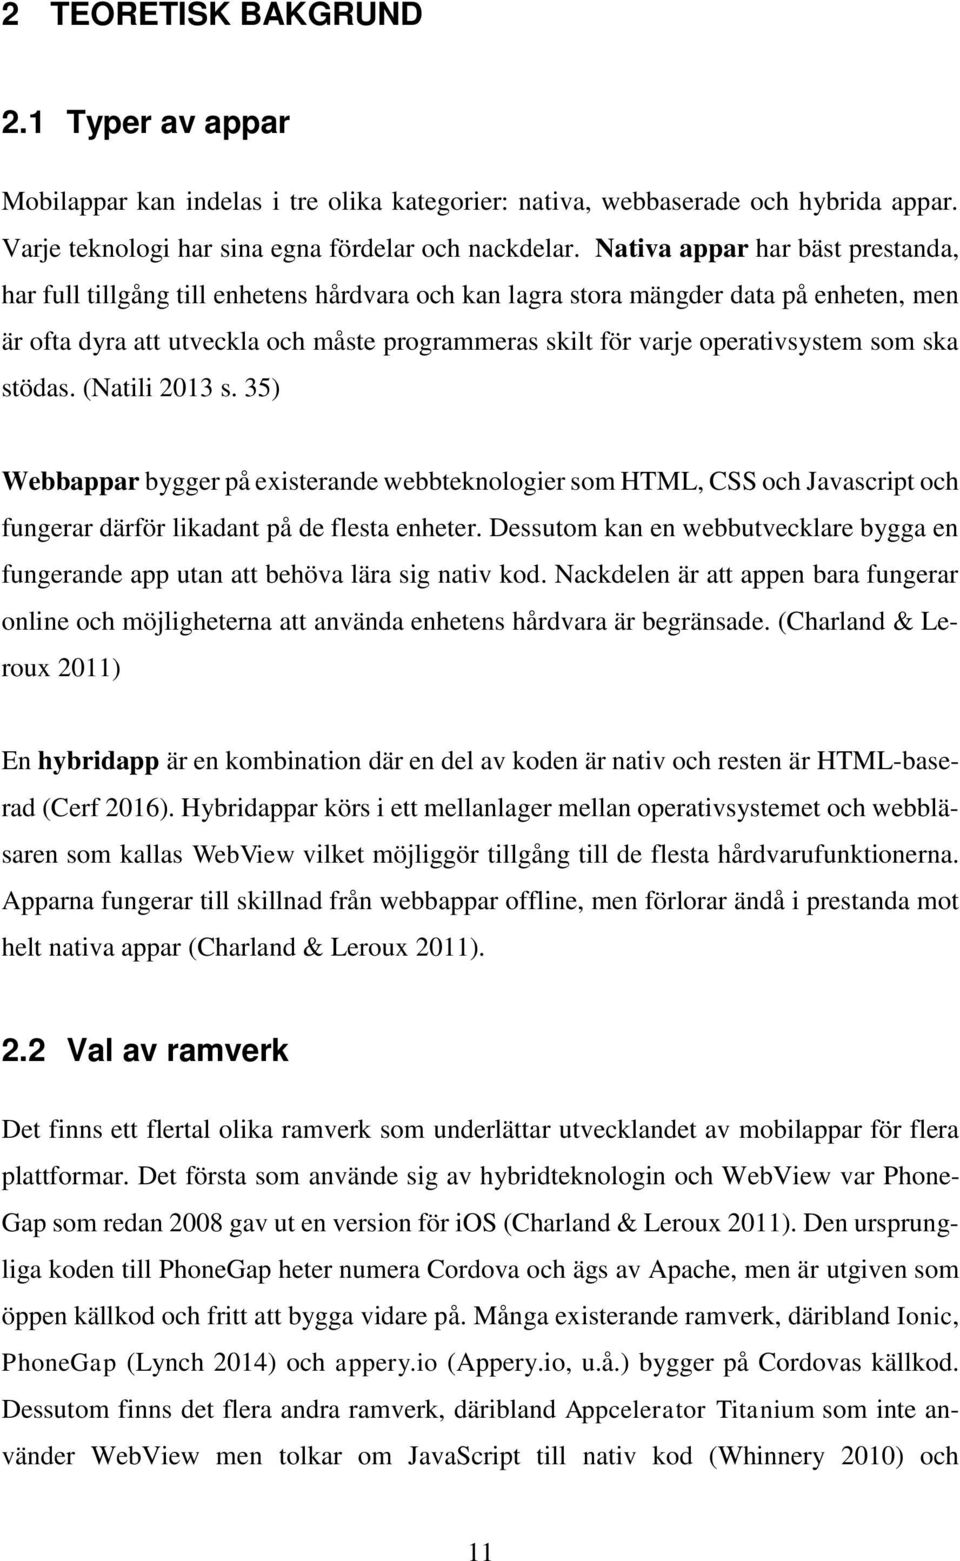 operativsystem som ska stödas. (Natili 2013 s. 35) Webbappar bygger på existerande webbteknologier som HTML, CSS och Javascript och fungerar därför likadant på de flesta enheter.